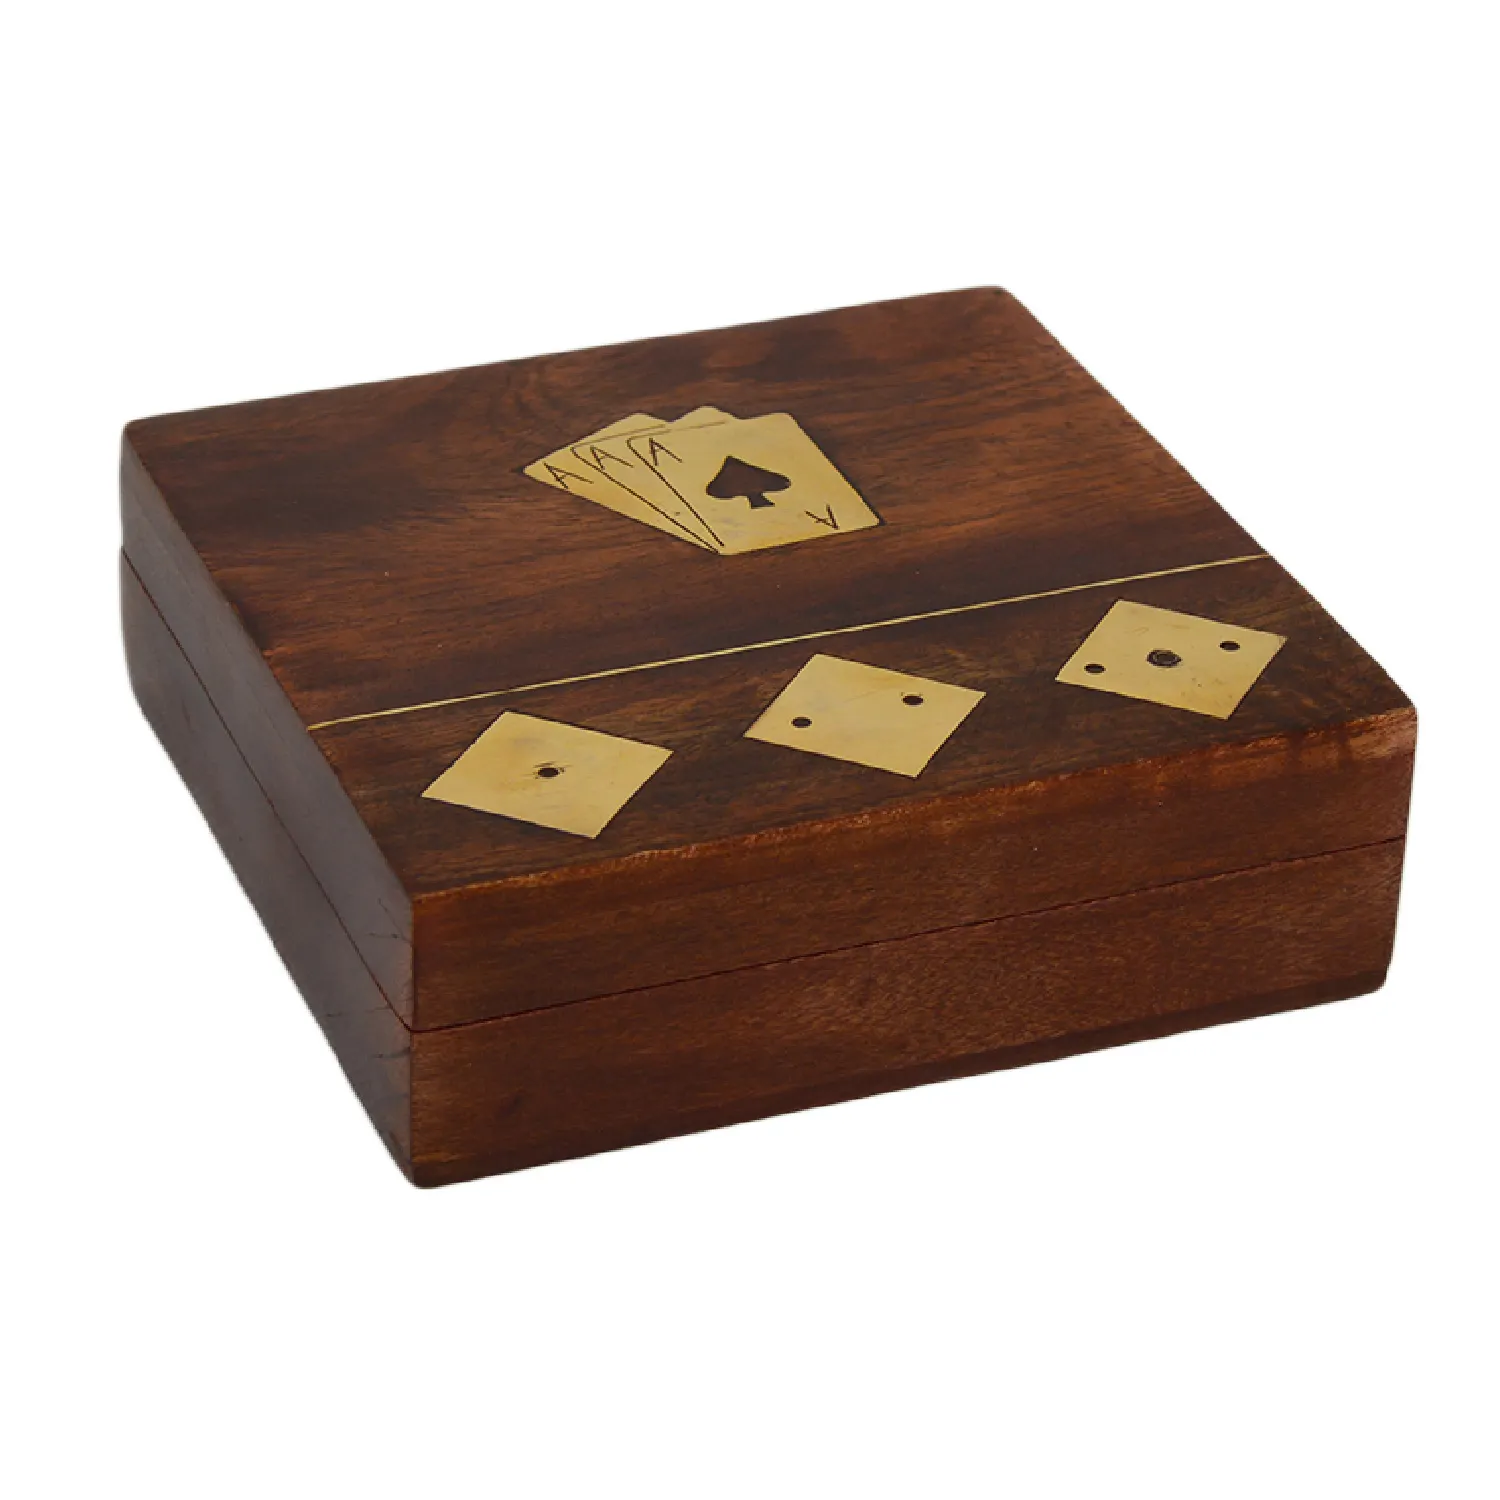 Capa de madeira para cartões e desenhos, caixa de cartões em forma quadrada com acabamento polido de qualidade superior